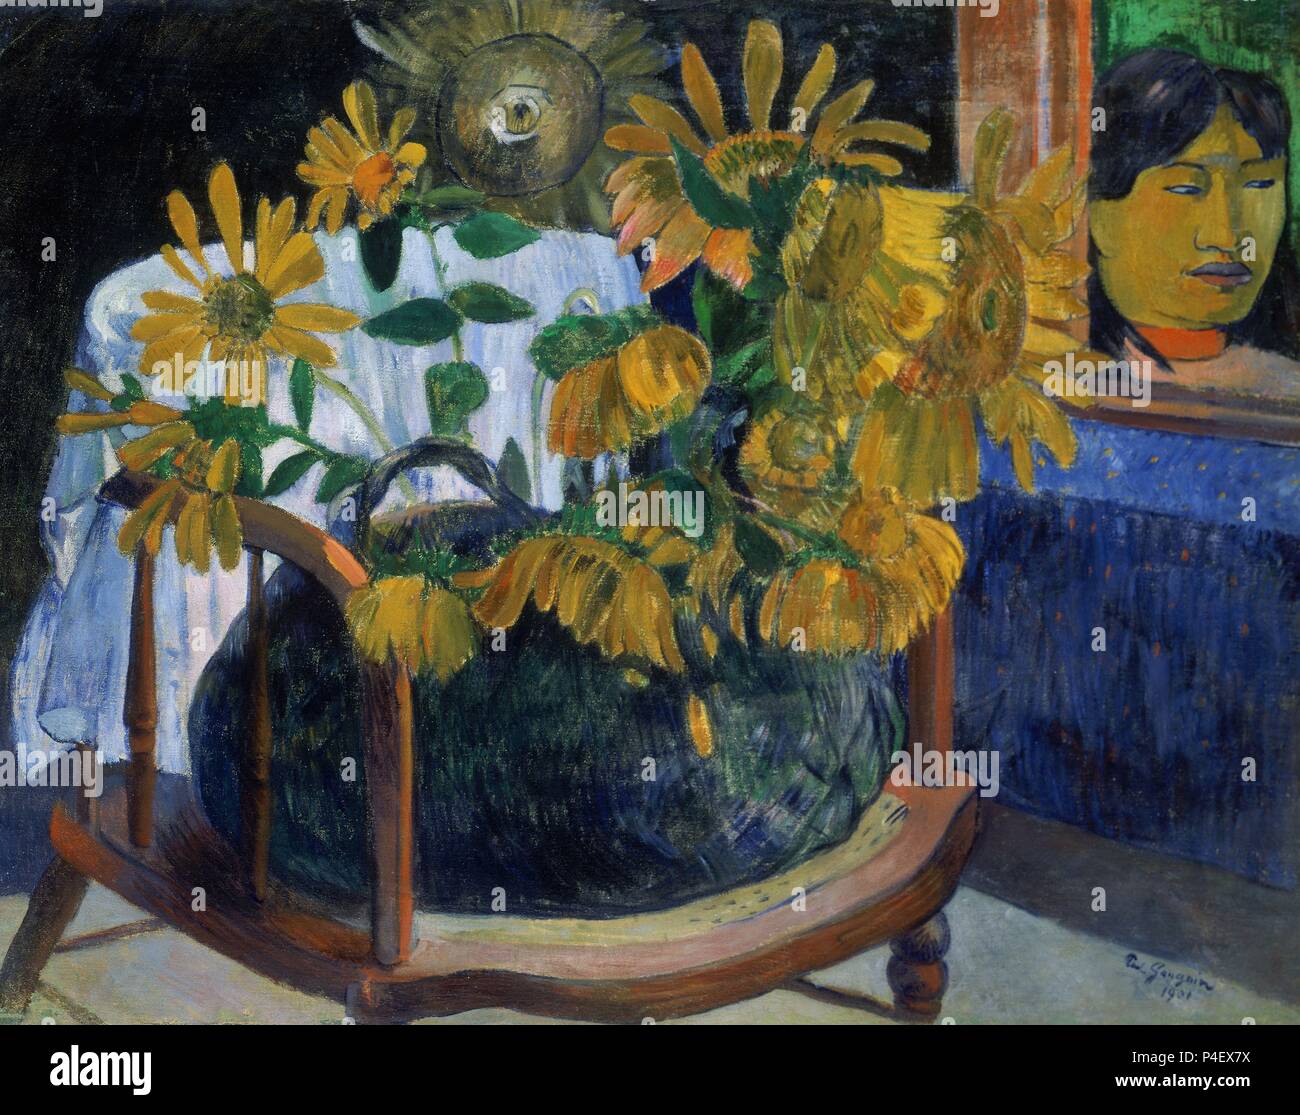 Sonnenblumen - 1901 - 72 x 91 cm - Öl auf Leinwand - Französisch Postimpressionismus. Autor: Eugène Henri Paul Gauguin (1848-1903). Lage: MUSEO ERMITAGE - COLECCION, ST. PETERSBURG, Russland. Auch bekannt als: GIRASOLES EN UN-sillon. Stockfoto